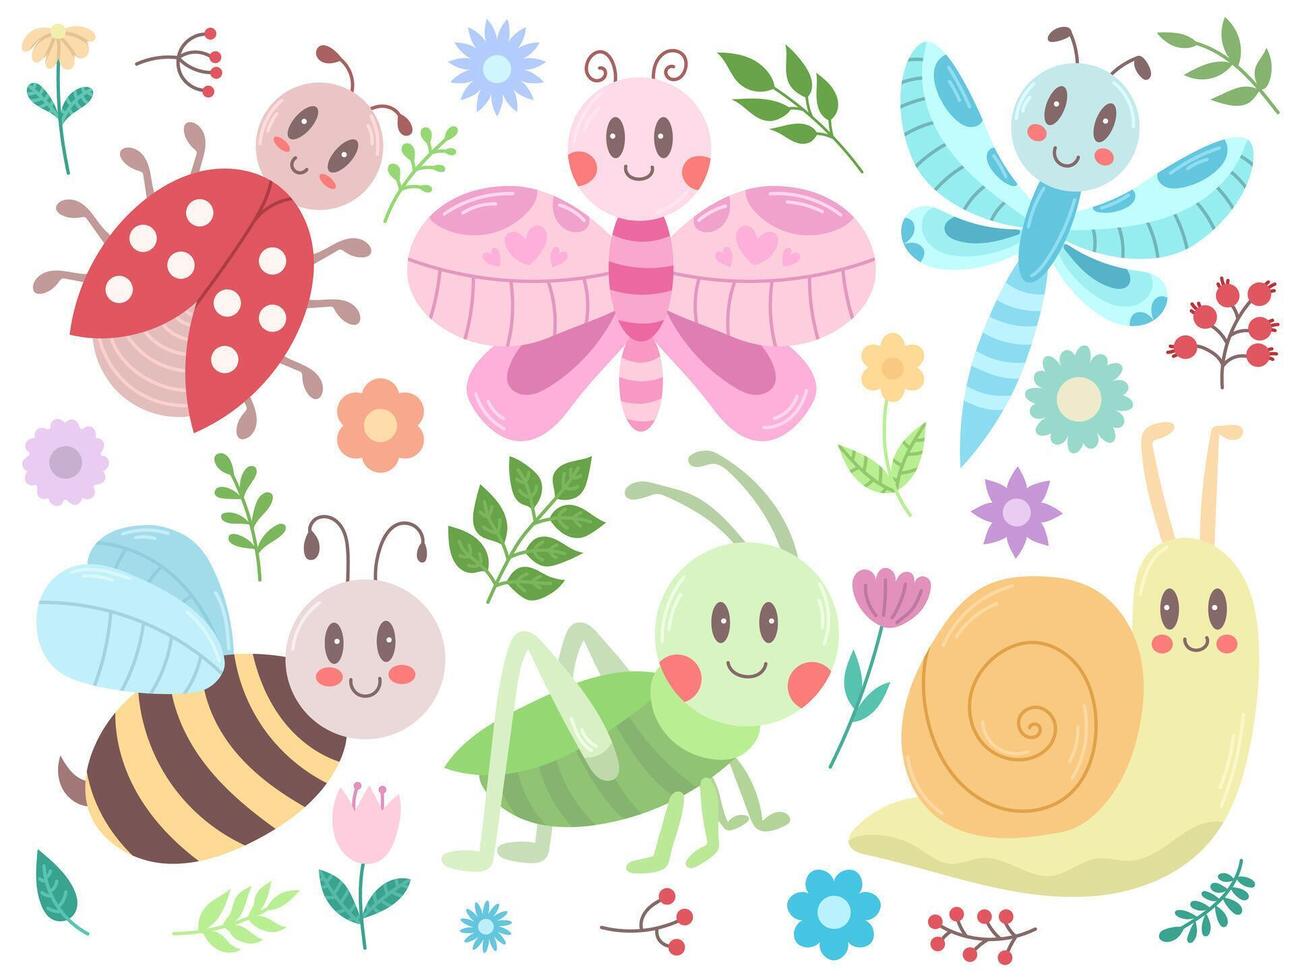 impostato con carino kawaii insetti, fiori e ramoscelli con le foglie - coccinella, cavalletta, ape, lumaca, la farfalla, libellula. vettore illustrazione, facile per modificare